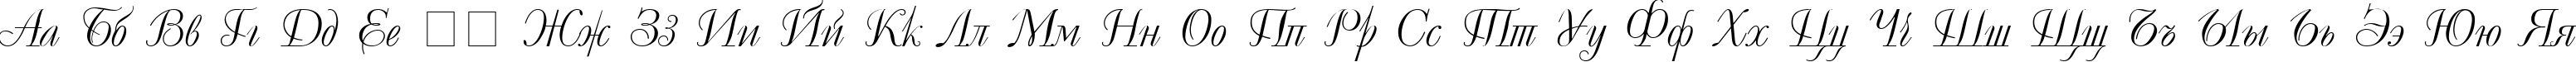 Пример написания русского алфавита шрифтом UkrainianDecor